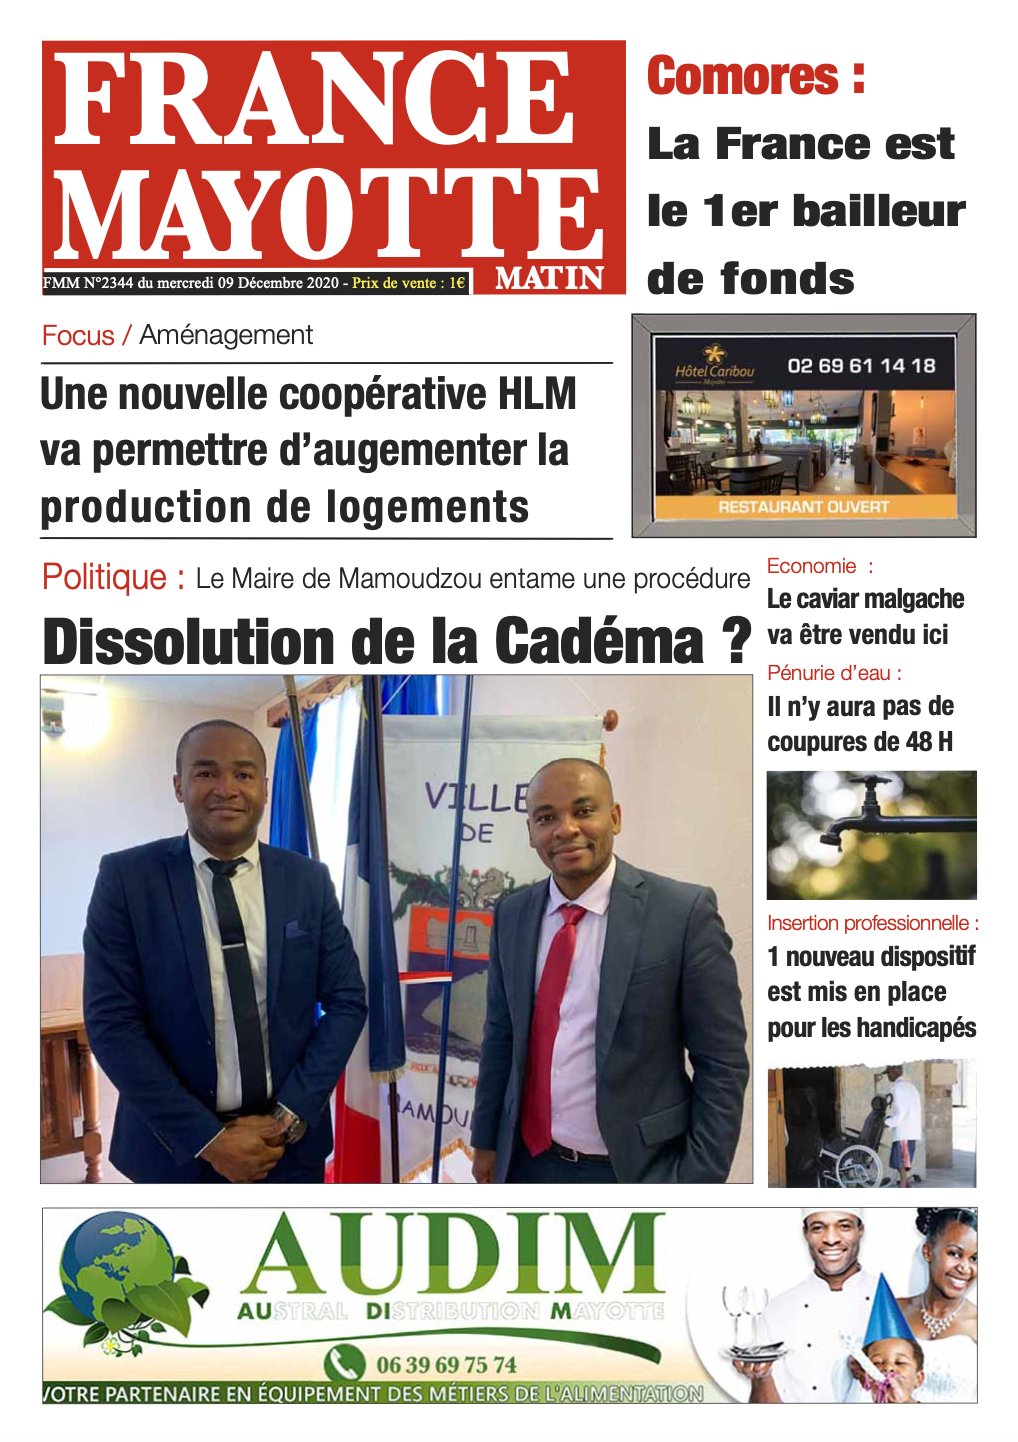 France Mayotte Mercredi 9 décembre 2020